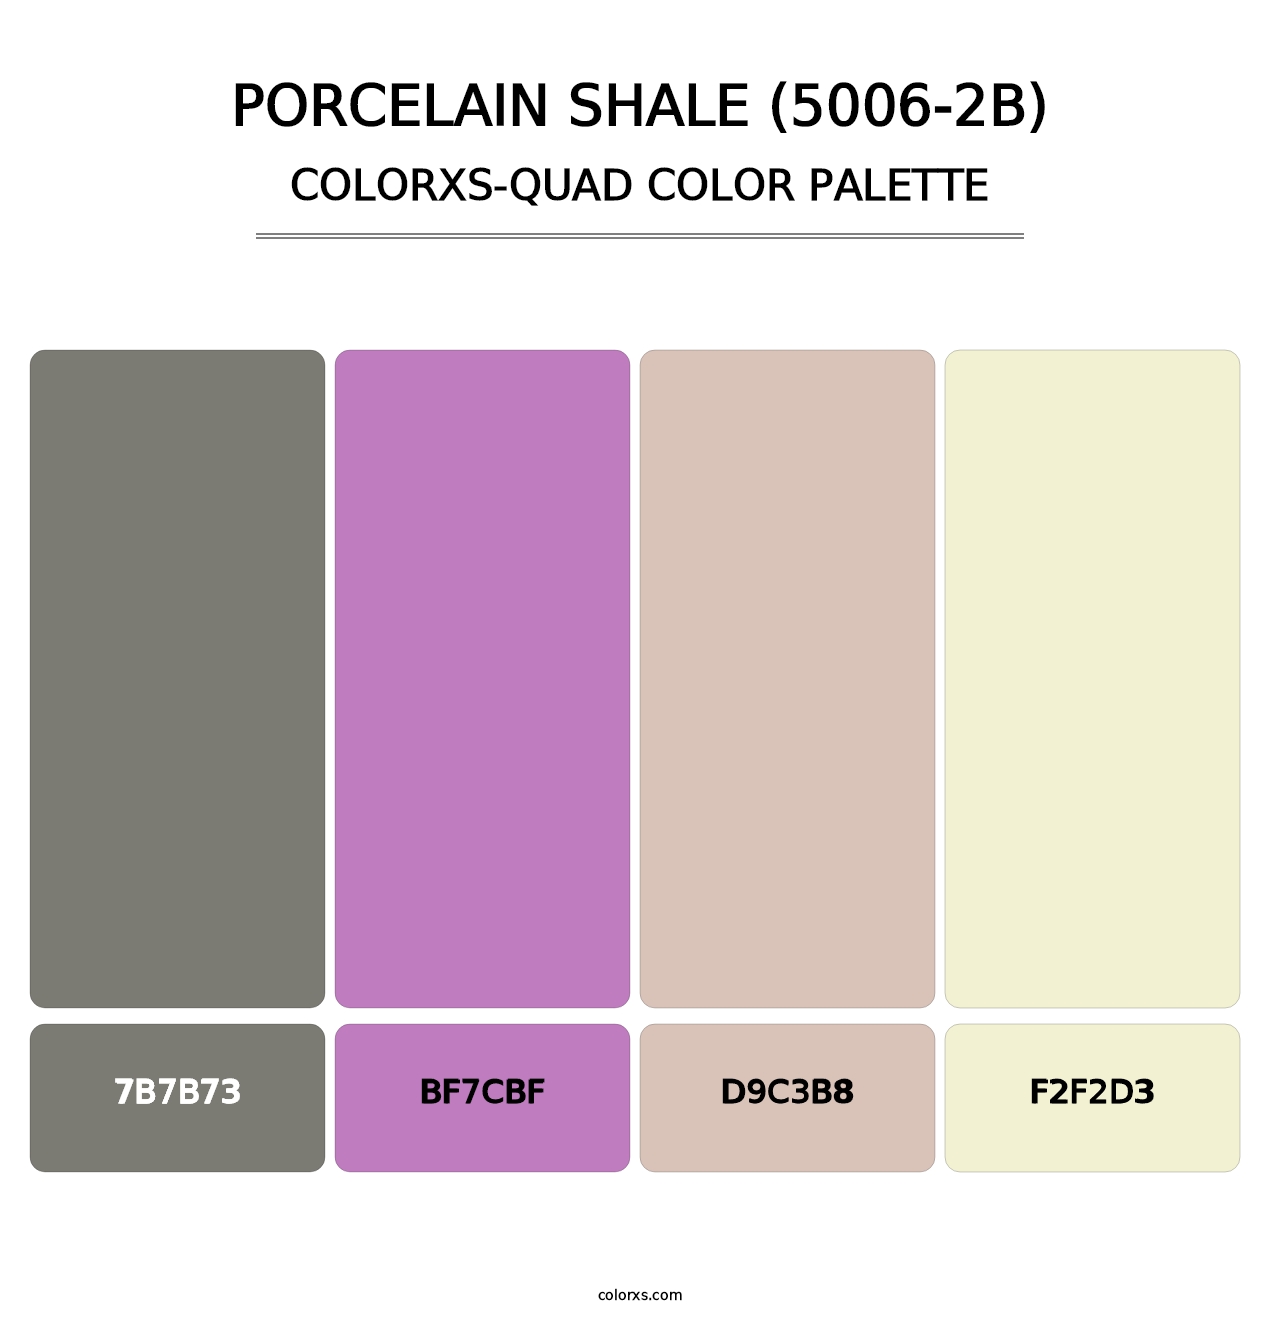 Porcelain Shale (5006-2B) - Colorxs Quad Palette